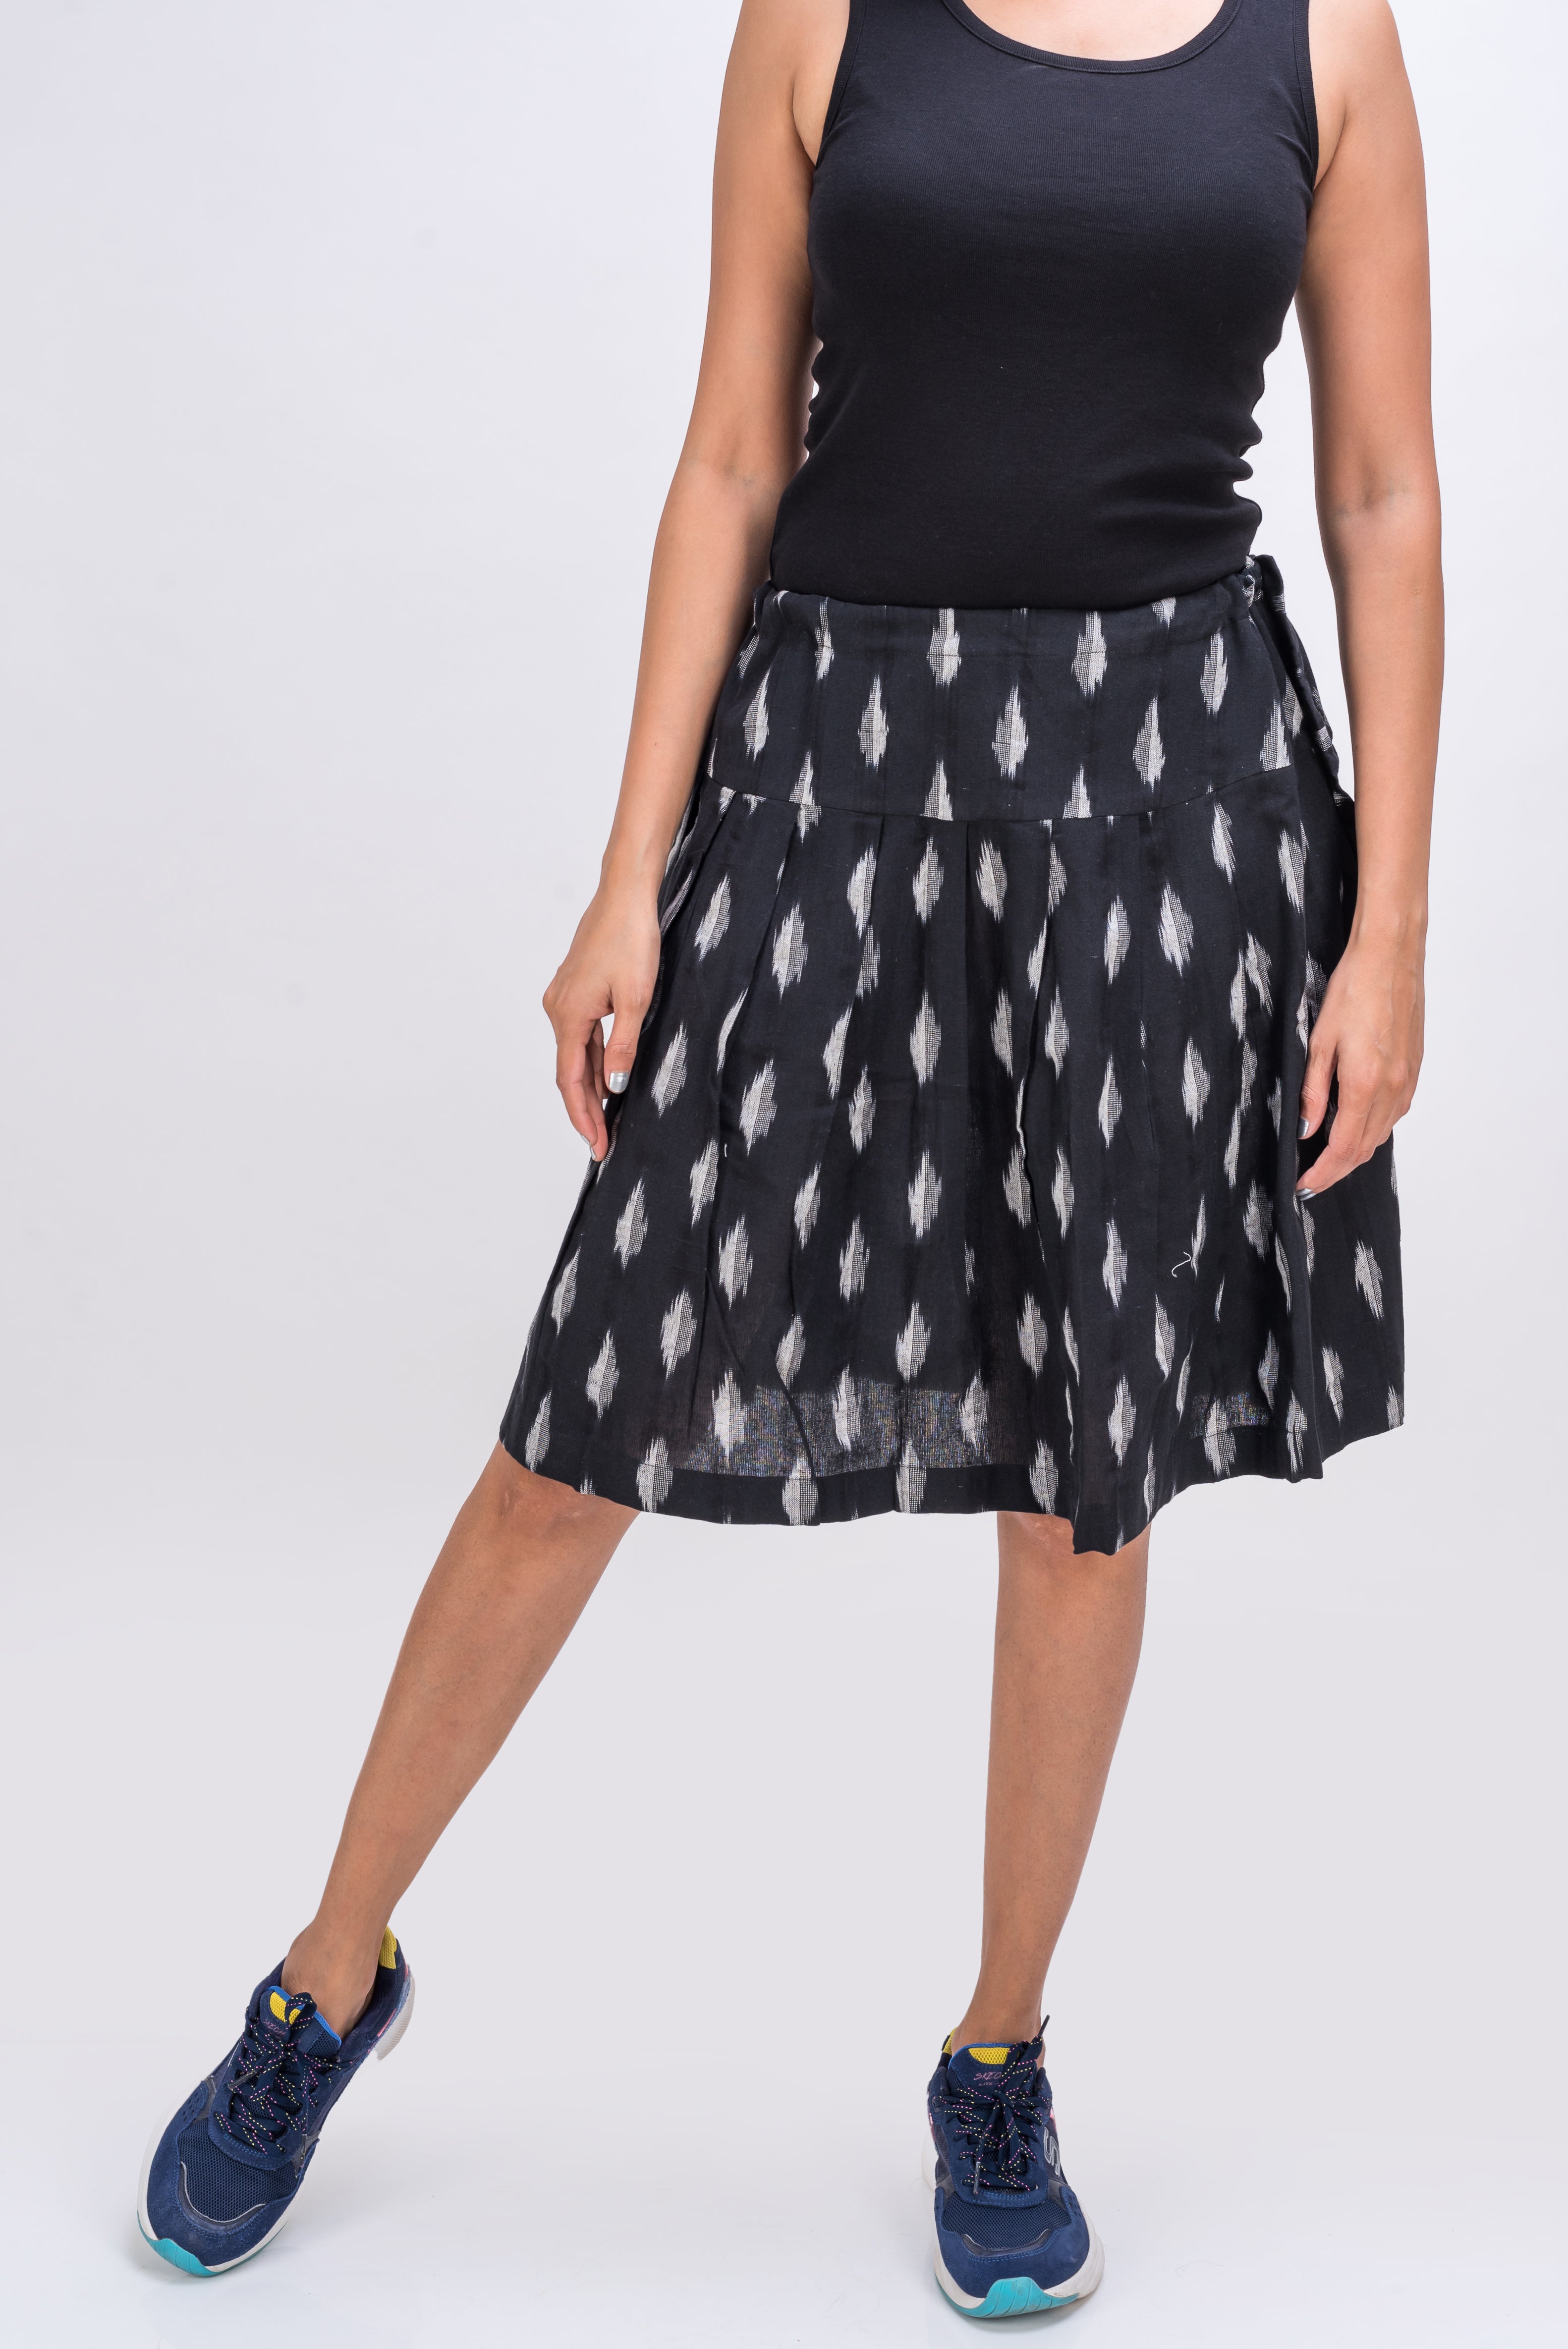 543-303 "Zara" Skirt